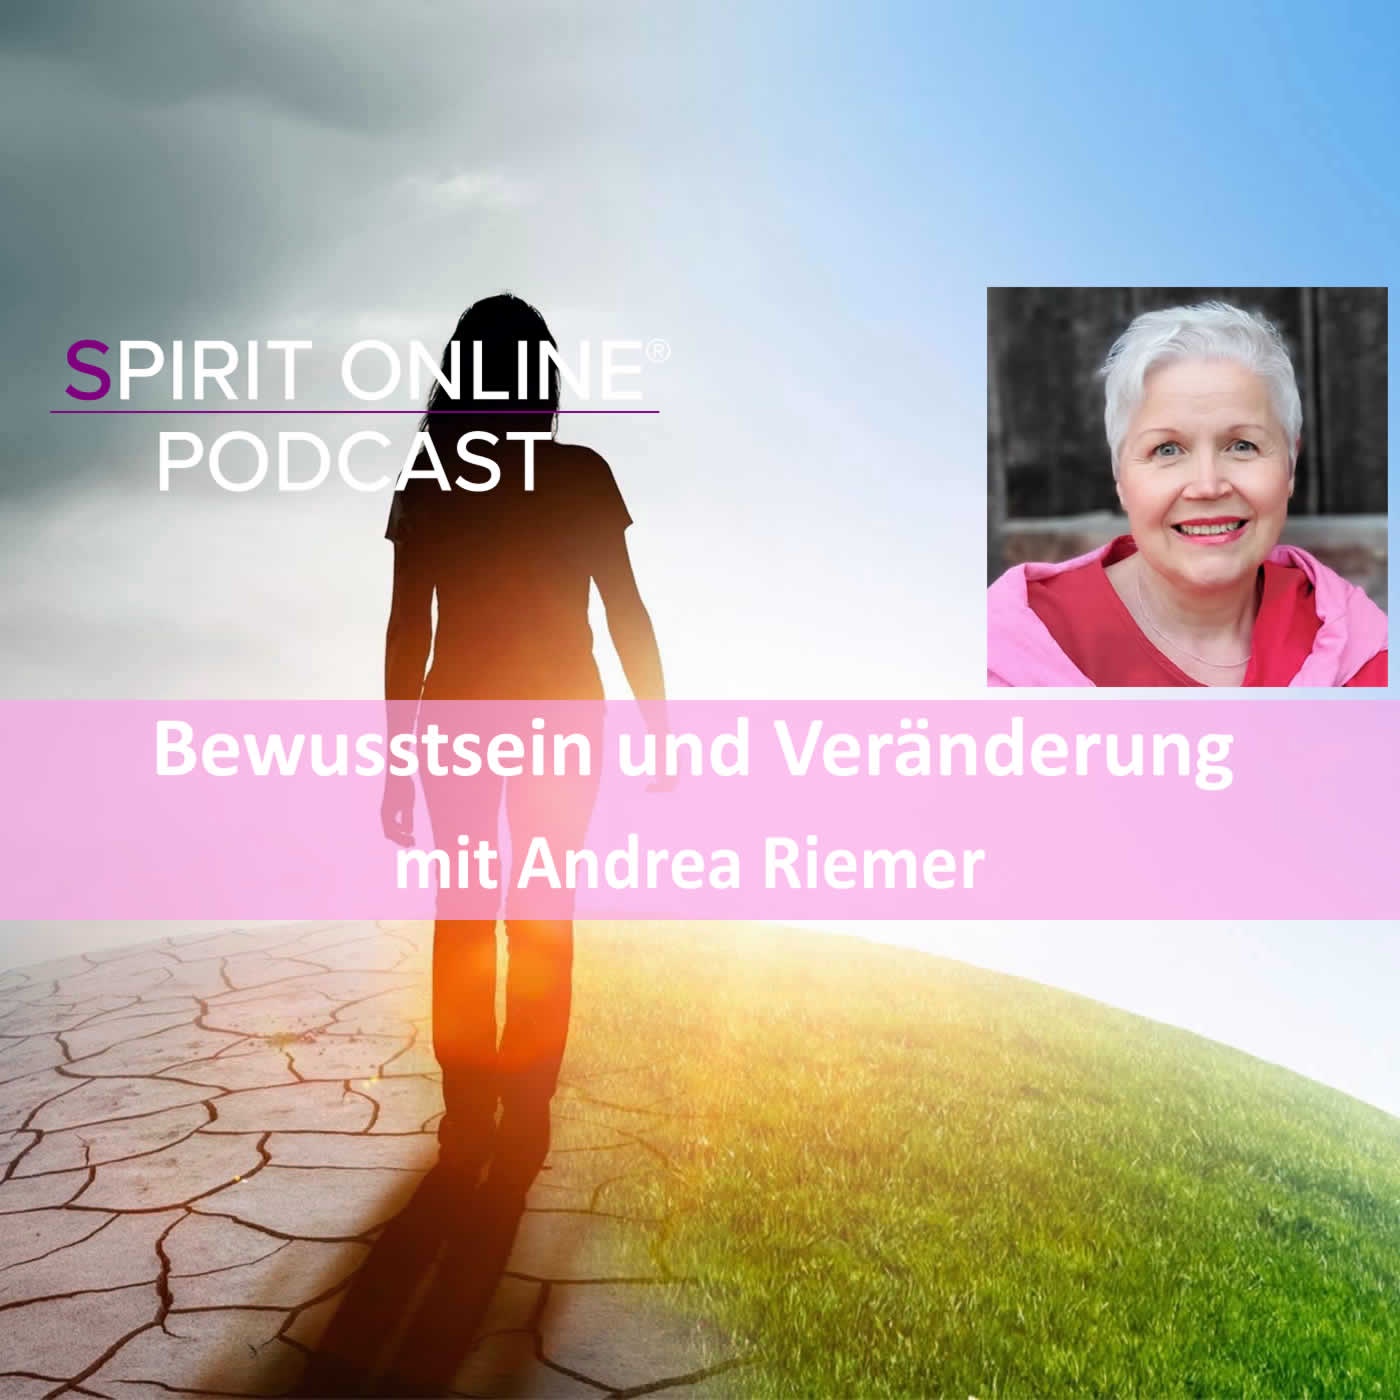 Bewusstsein und Veränderung Podcast mit Andrea